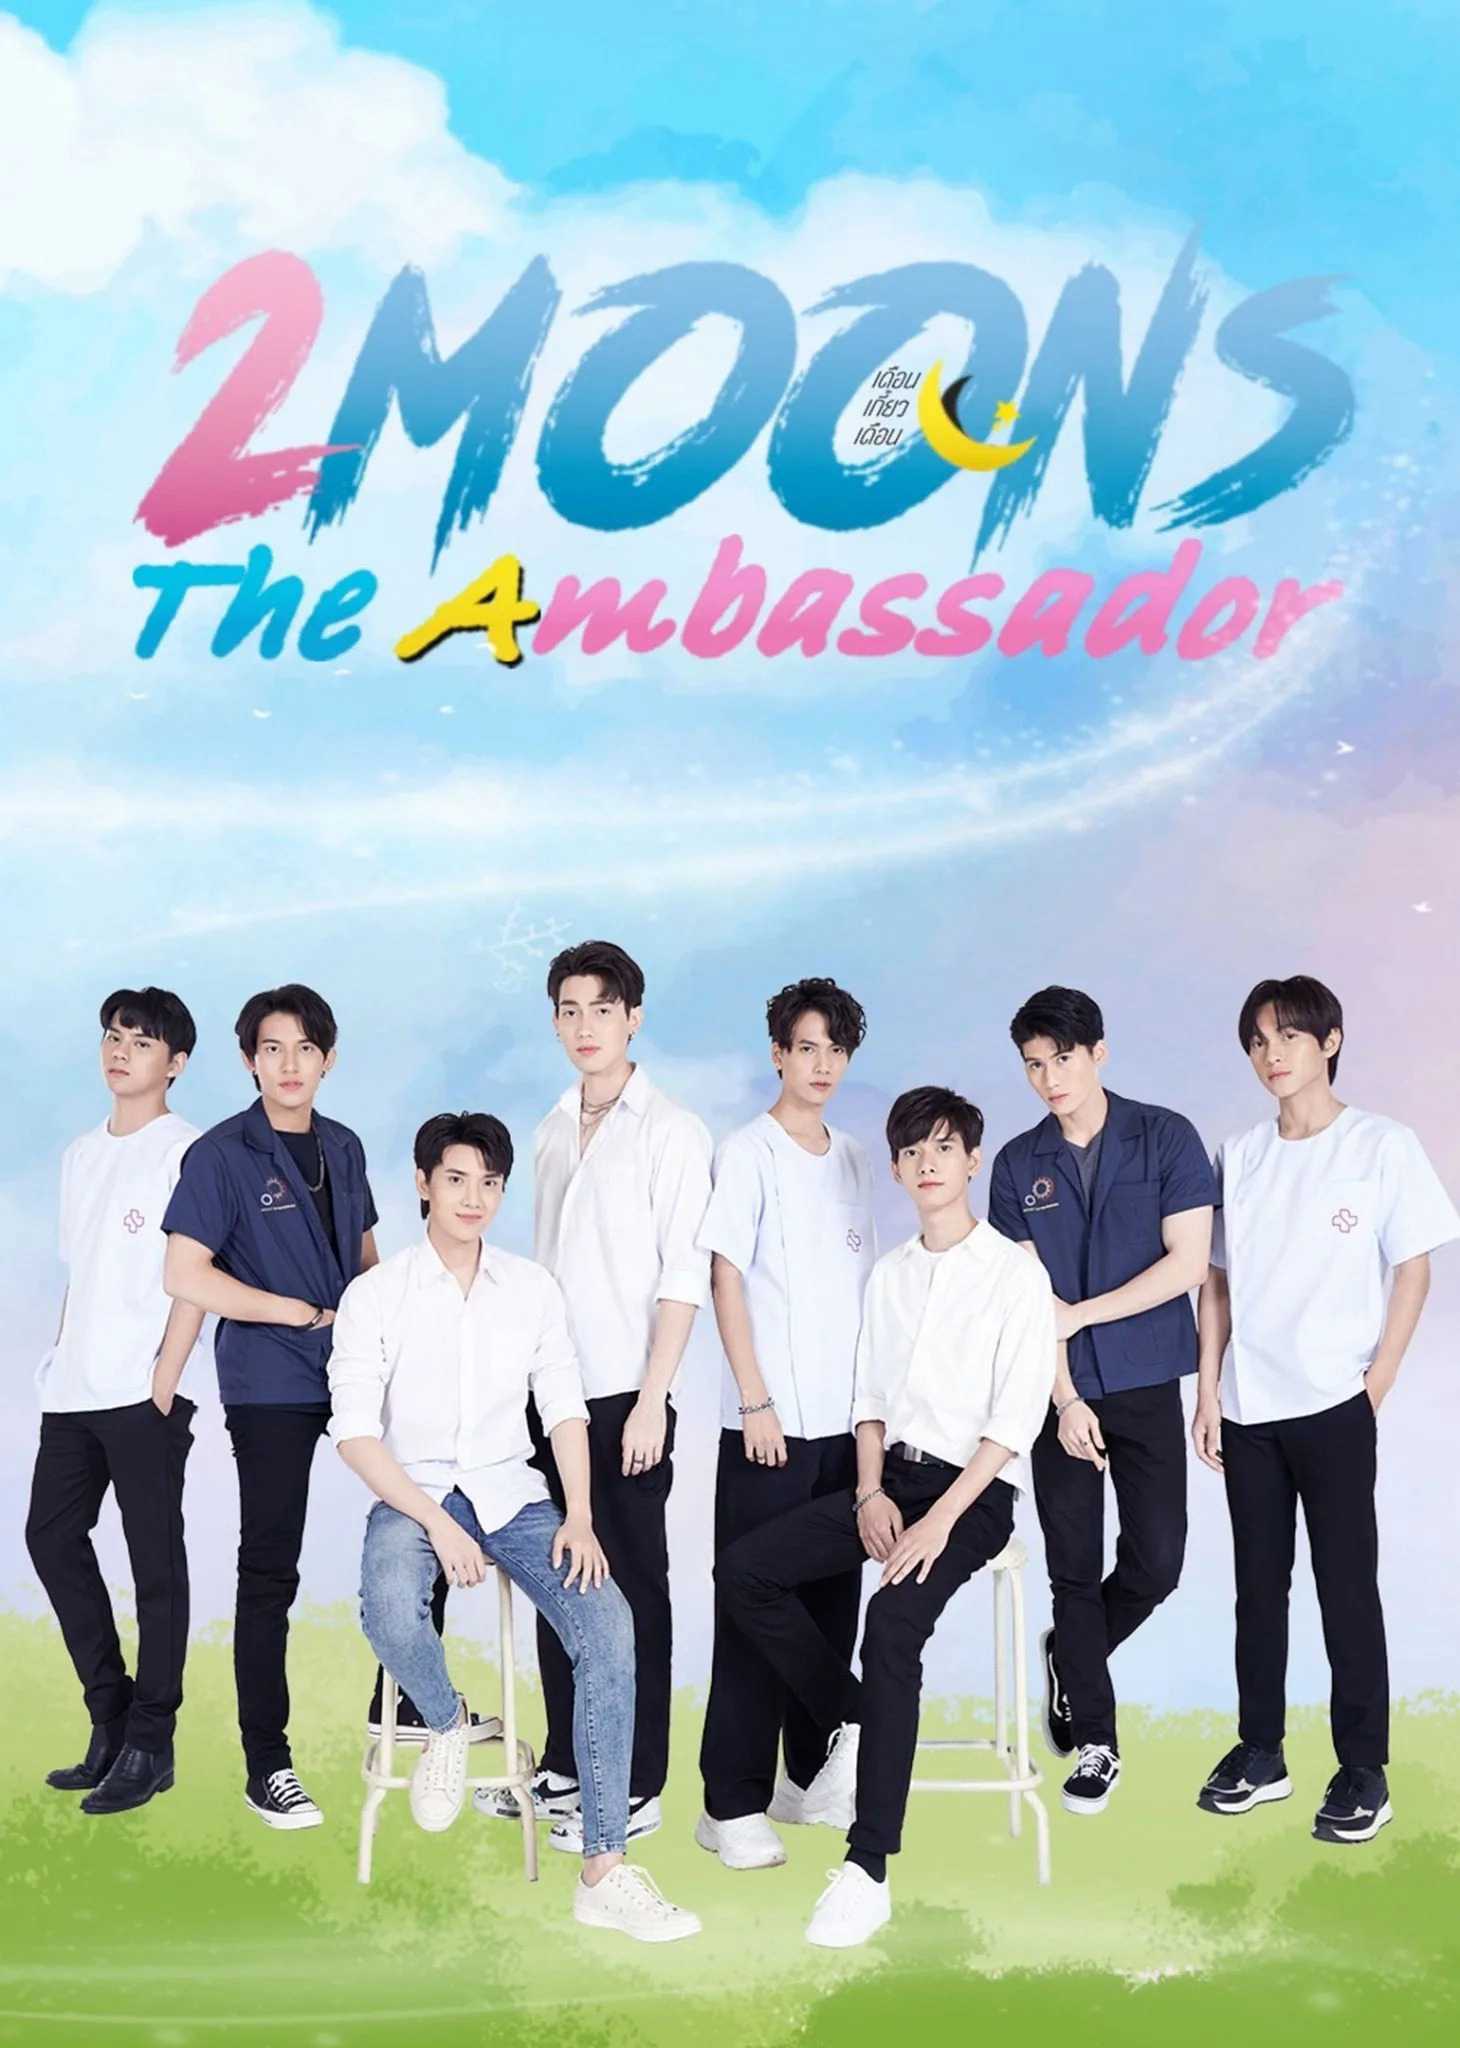 2 Moons The Ambassador - 2 Moons The Ambassador